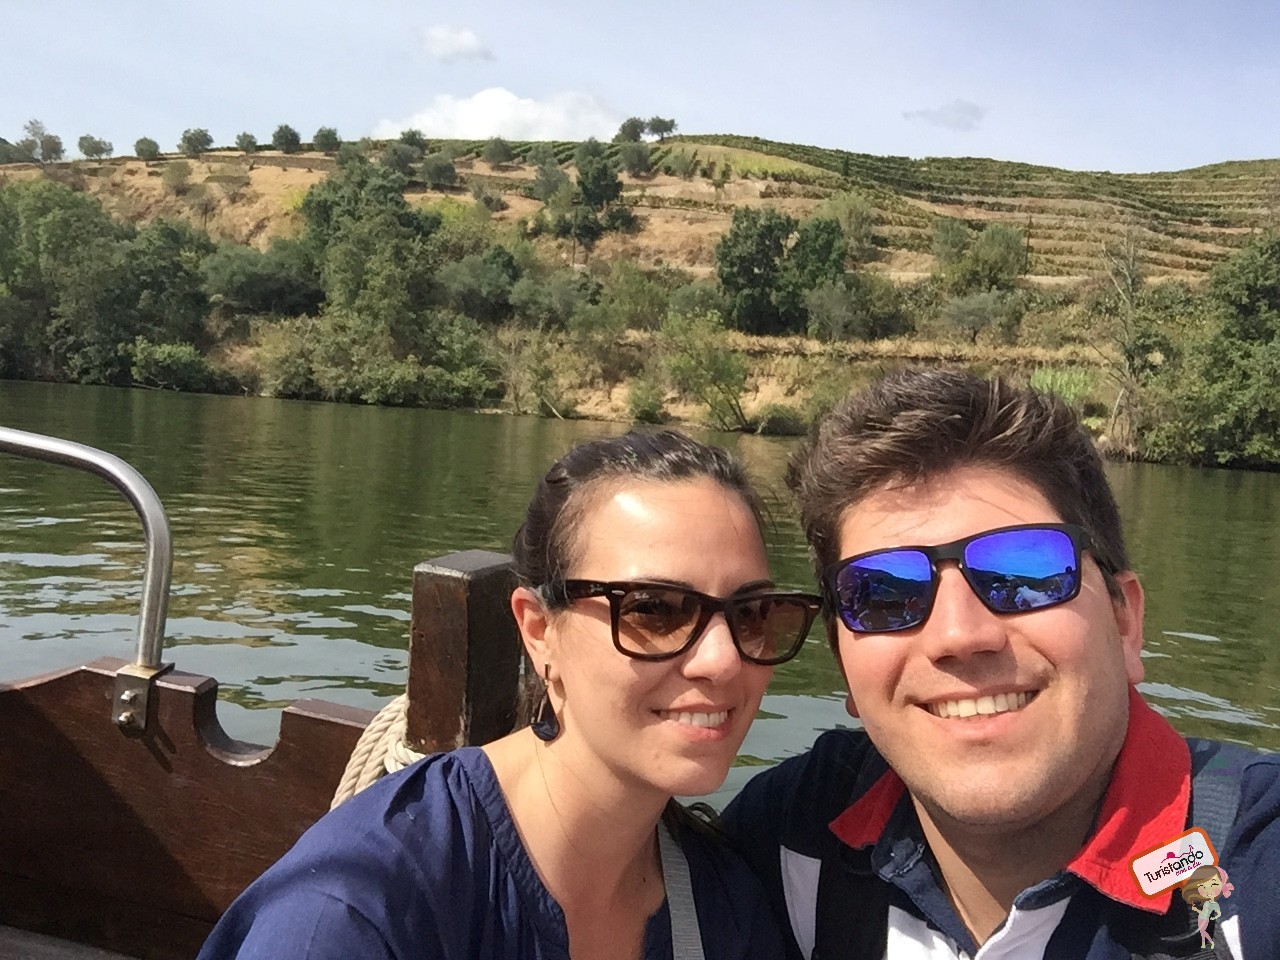 Passeio de barco Rabelo em Pinhão - Vale do Douro